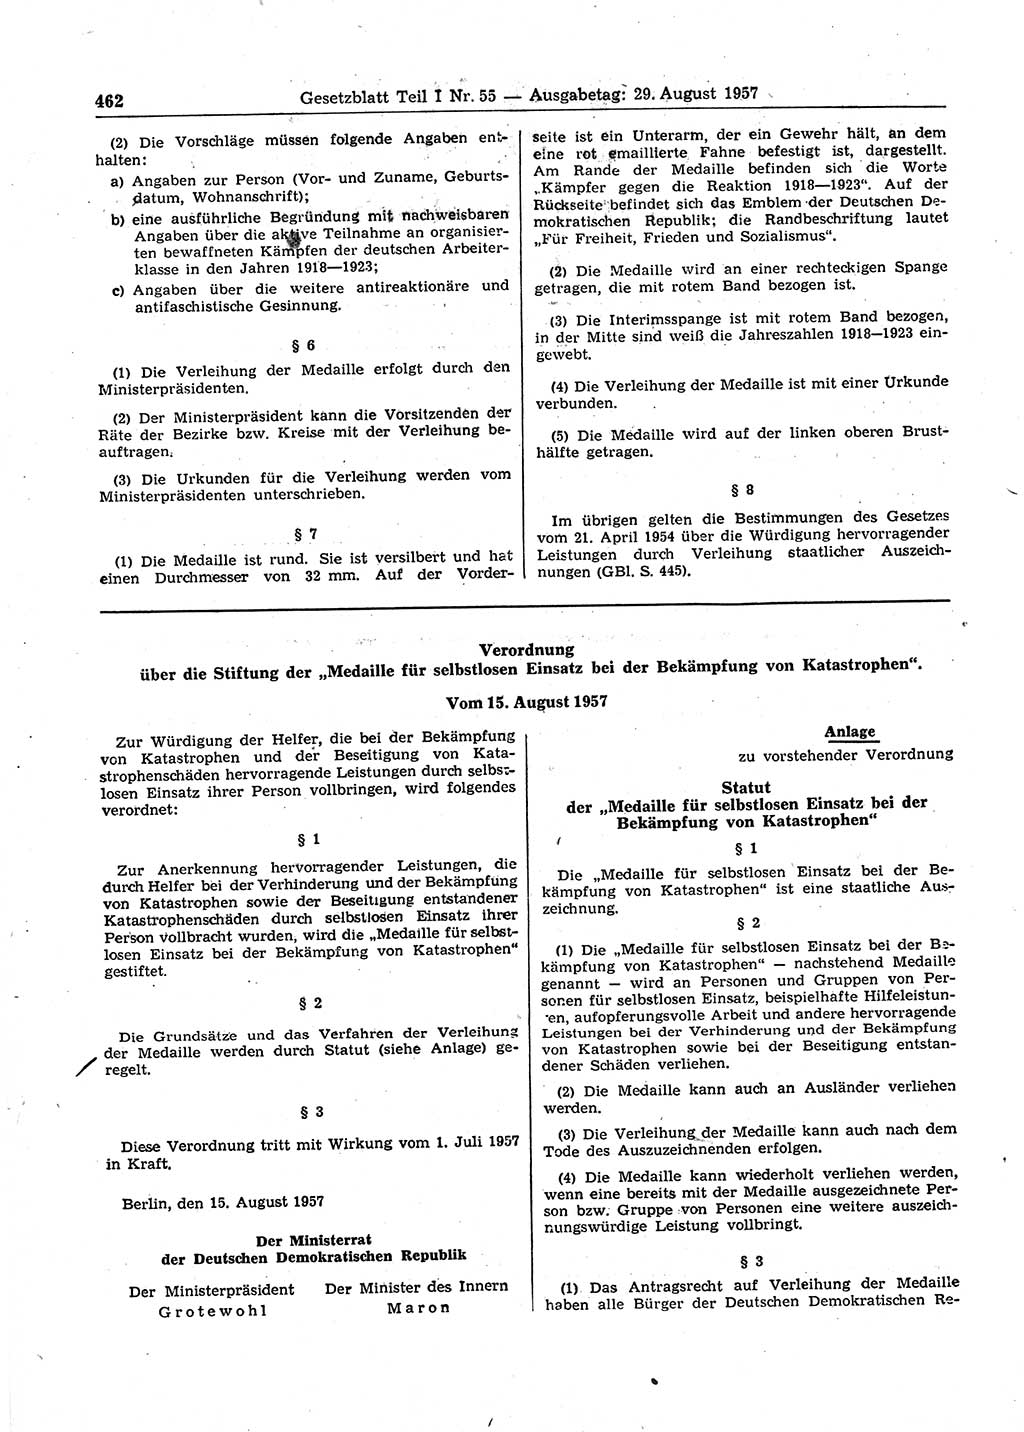 Gesetzblatt (GBl.) der Deutschen Demokratischen Republik (DDR) Teil Ⅰ 1957, Seite 462 (GBl. DDR Ⅰ 1957, S. 462)